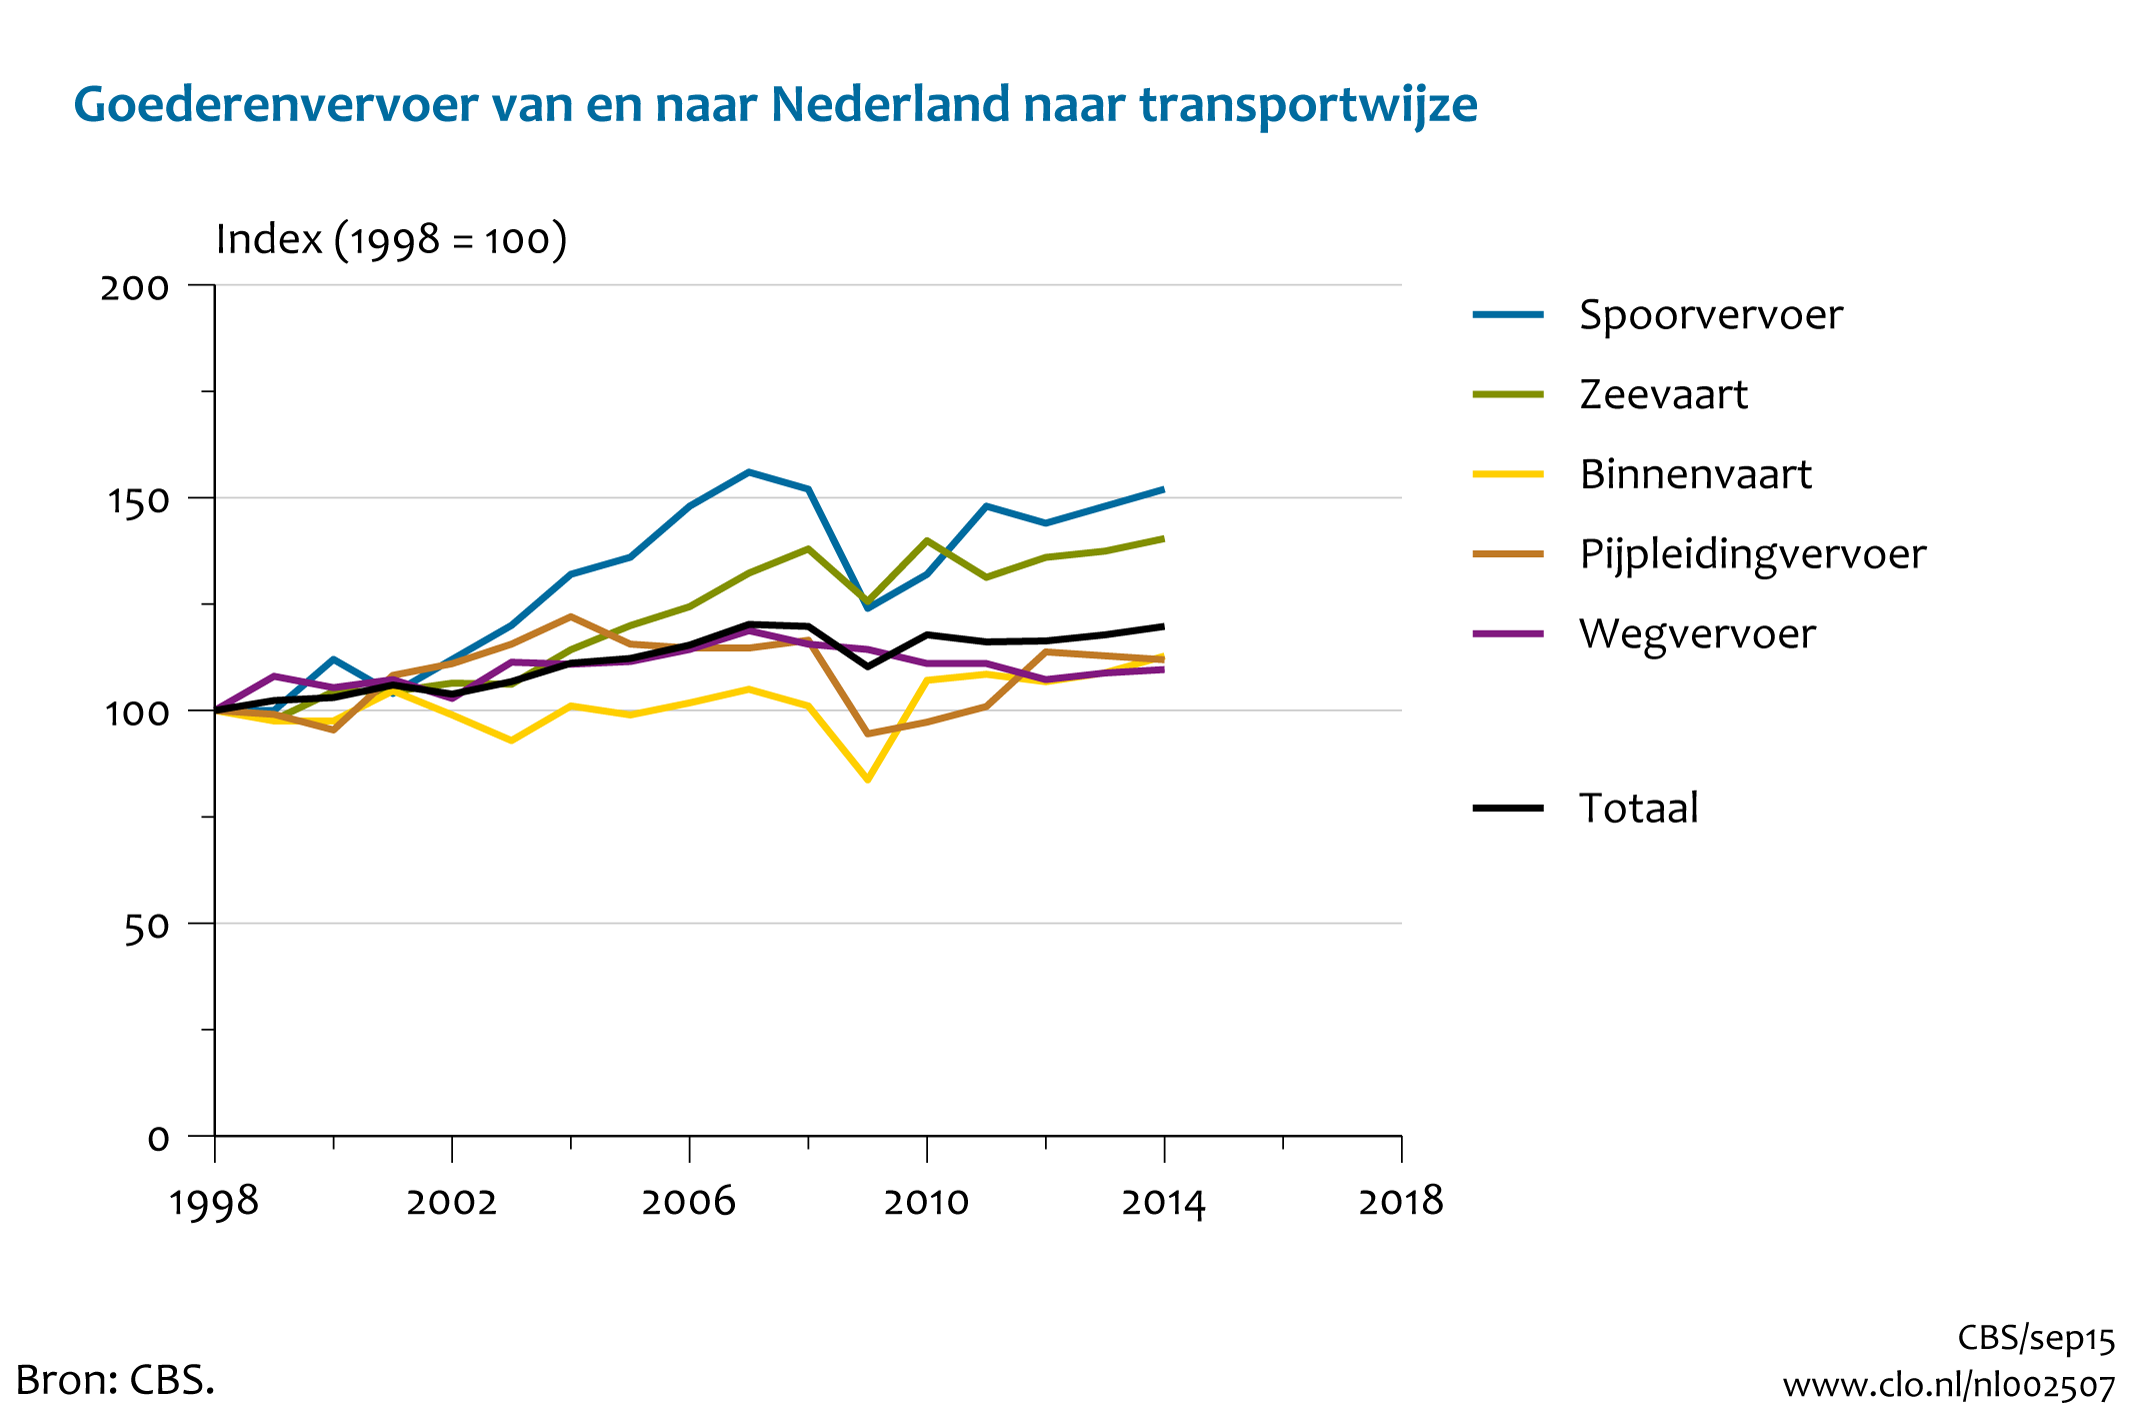 Figuur Ontwikkeling goederenvervoer van en naar Nederland. In de rest van de tekst wordt deze figuur uitgebreider uitgelegd.